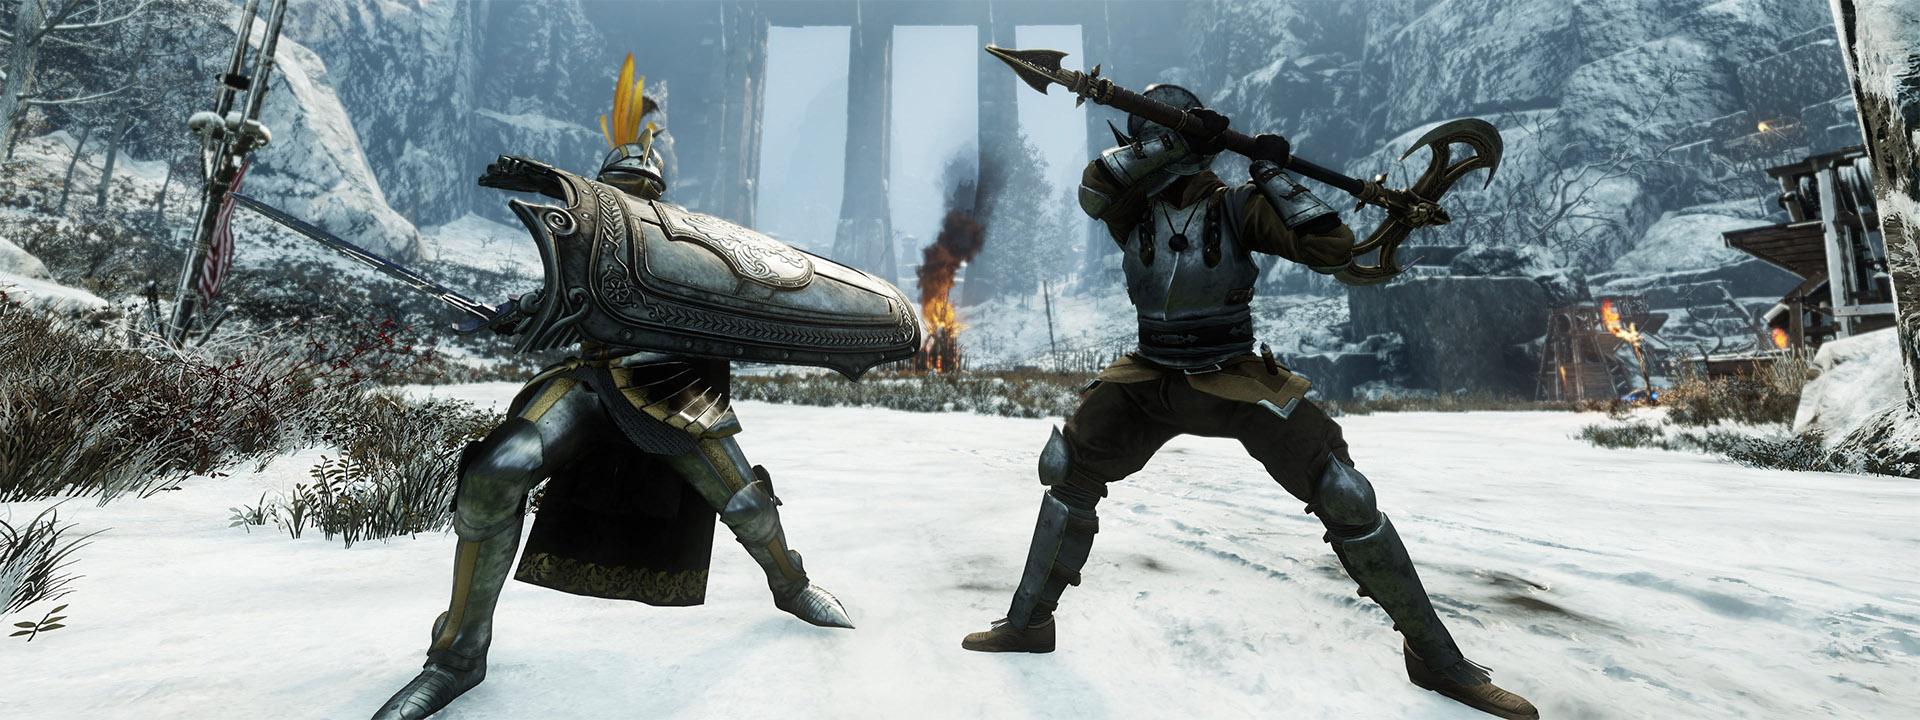 Une capture d’écran montrant deux personnages de New World qui se battent.